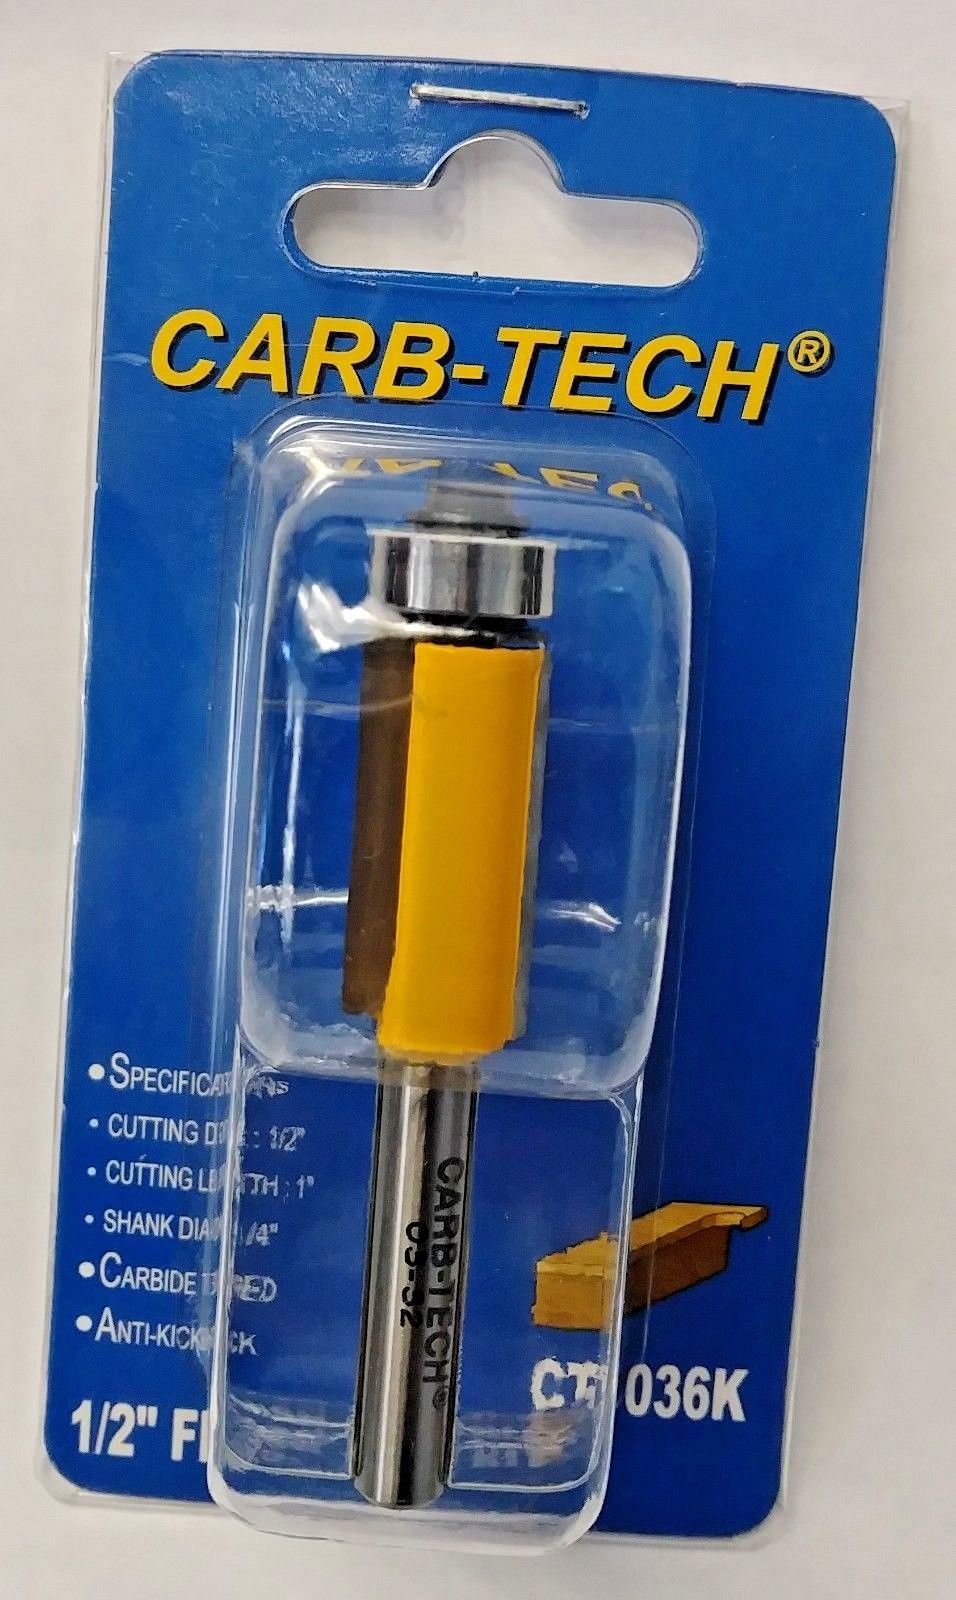 Carb-Tech CT1036K 1/2" Flush Trim Router Bit Carbide Tipped